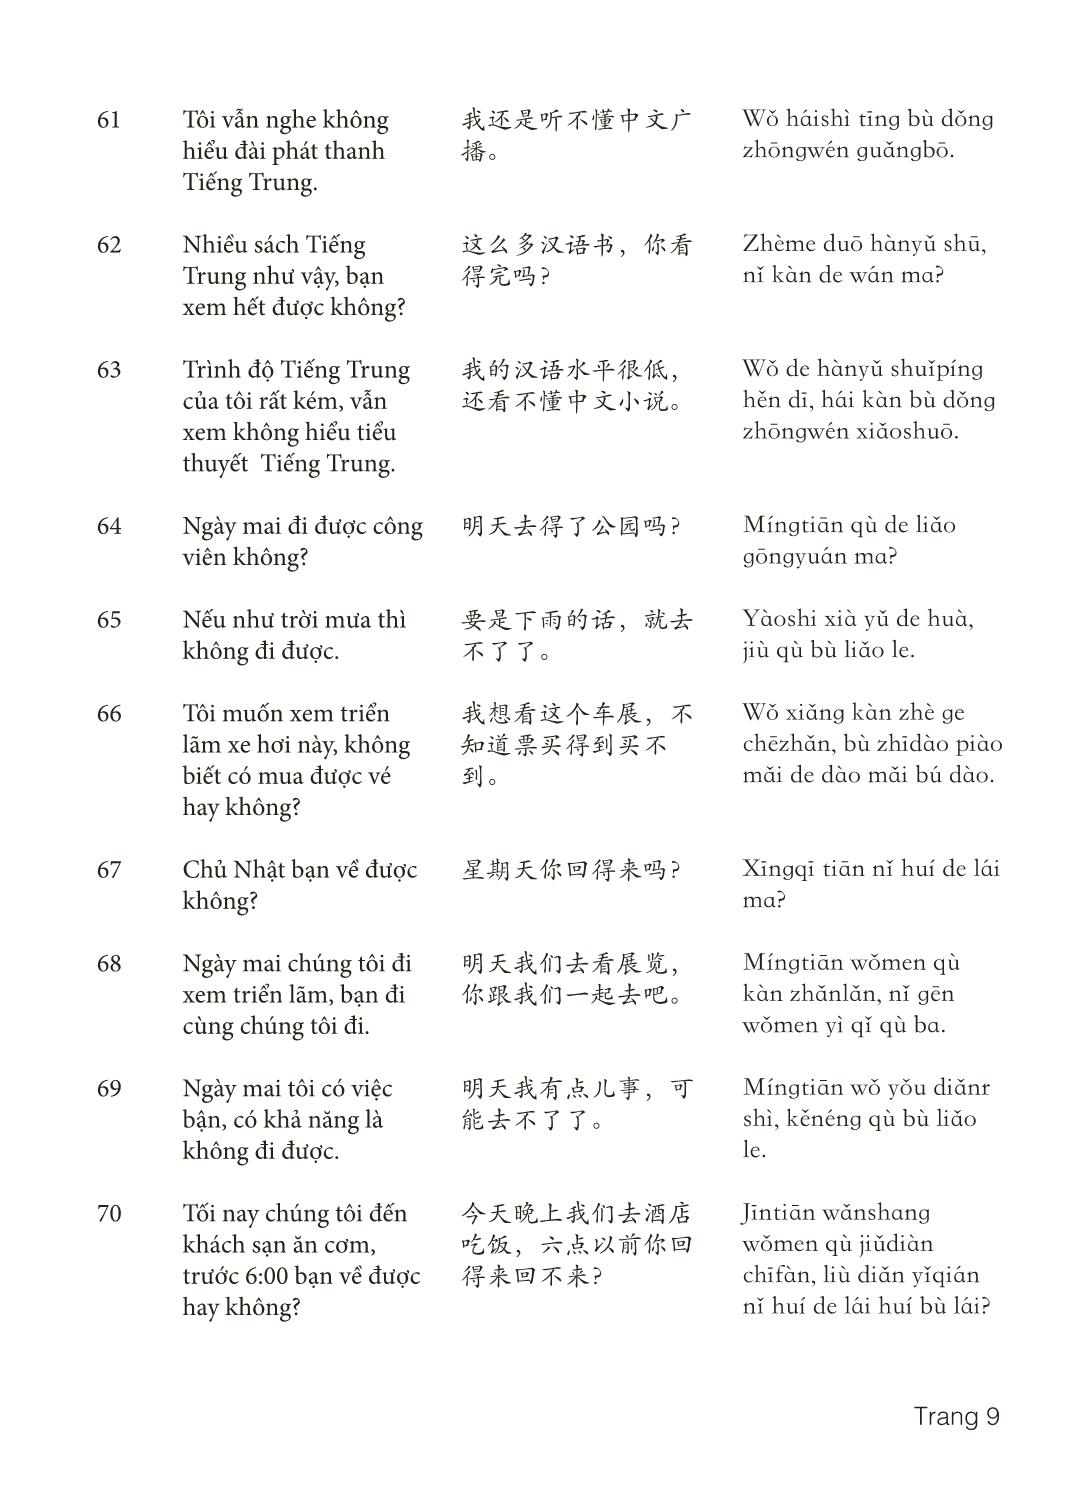 3000 Câu đàm thoại tiếng Hoa - Phần 24 trang 9